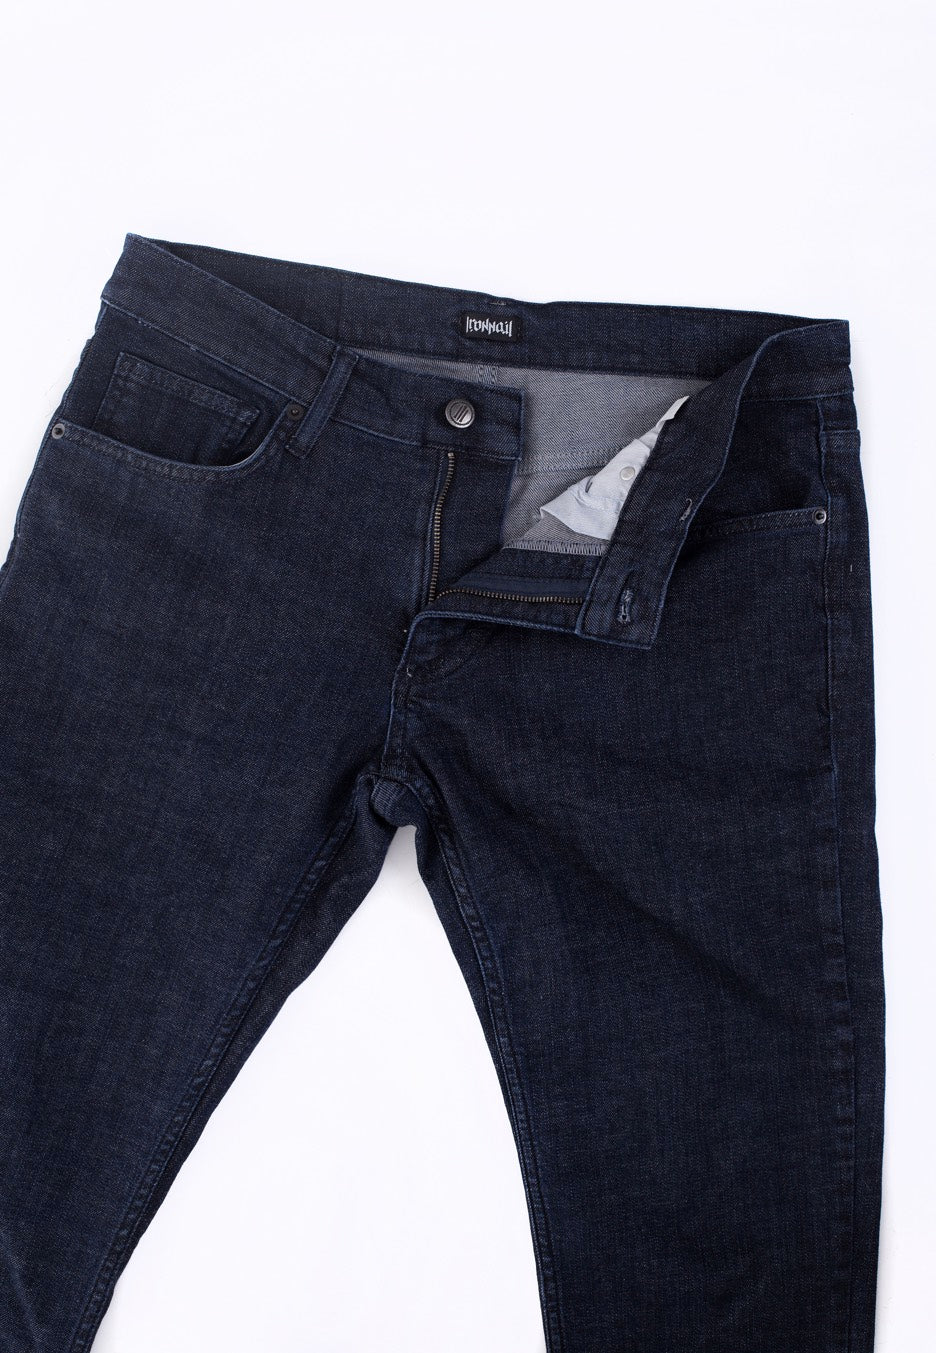 Ironnail - Hulse Skinny Dark Blue - Jeans